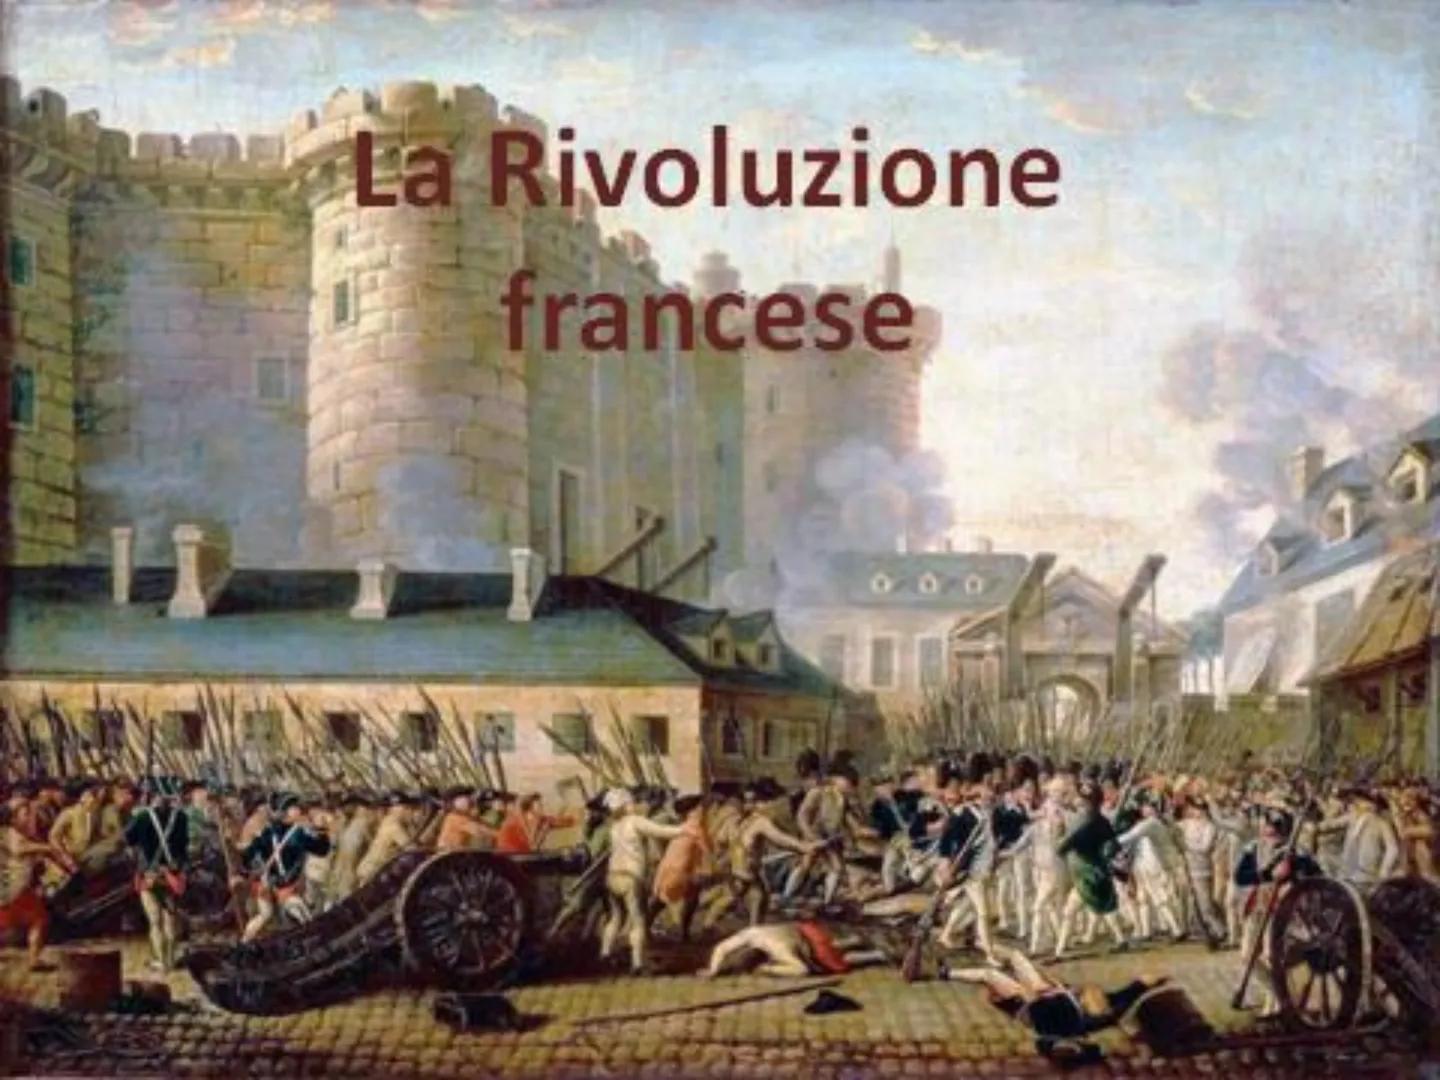 
<p>La Rivoluzione francese è un evento di grande importanza, in quanto segna il progressivo distacco dalle antiche strutture monarchiche e 